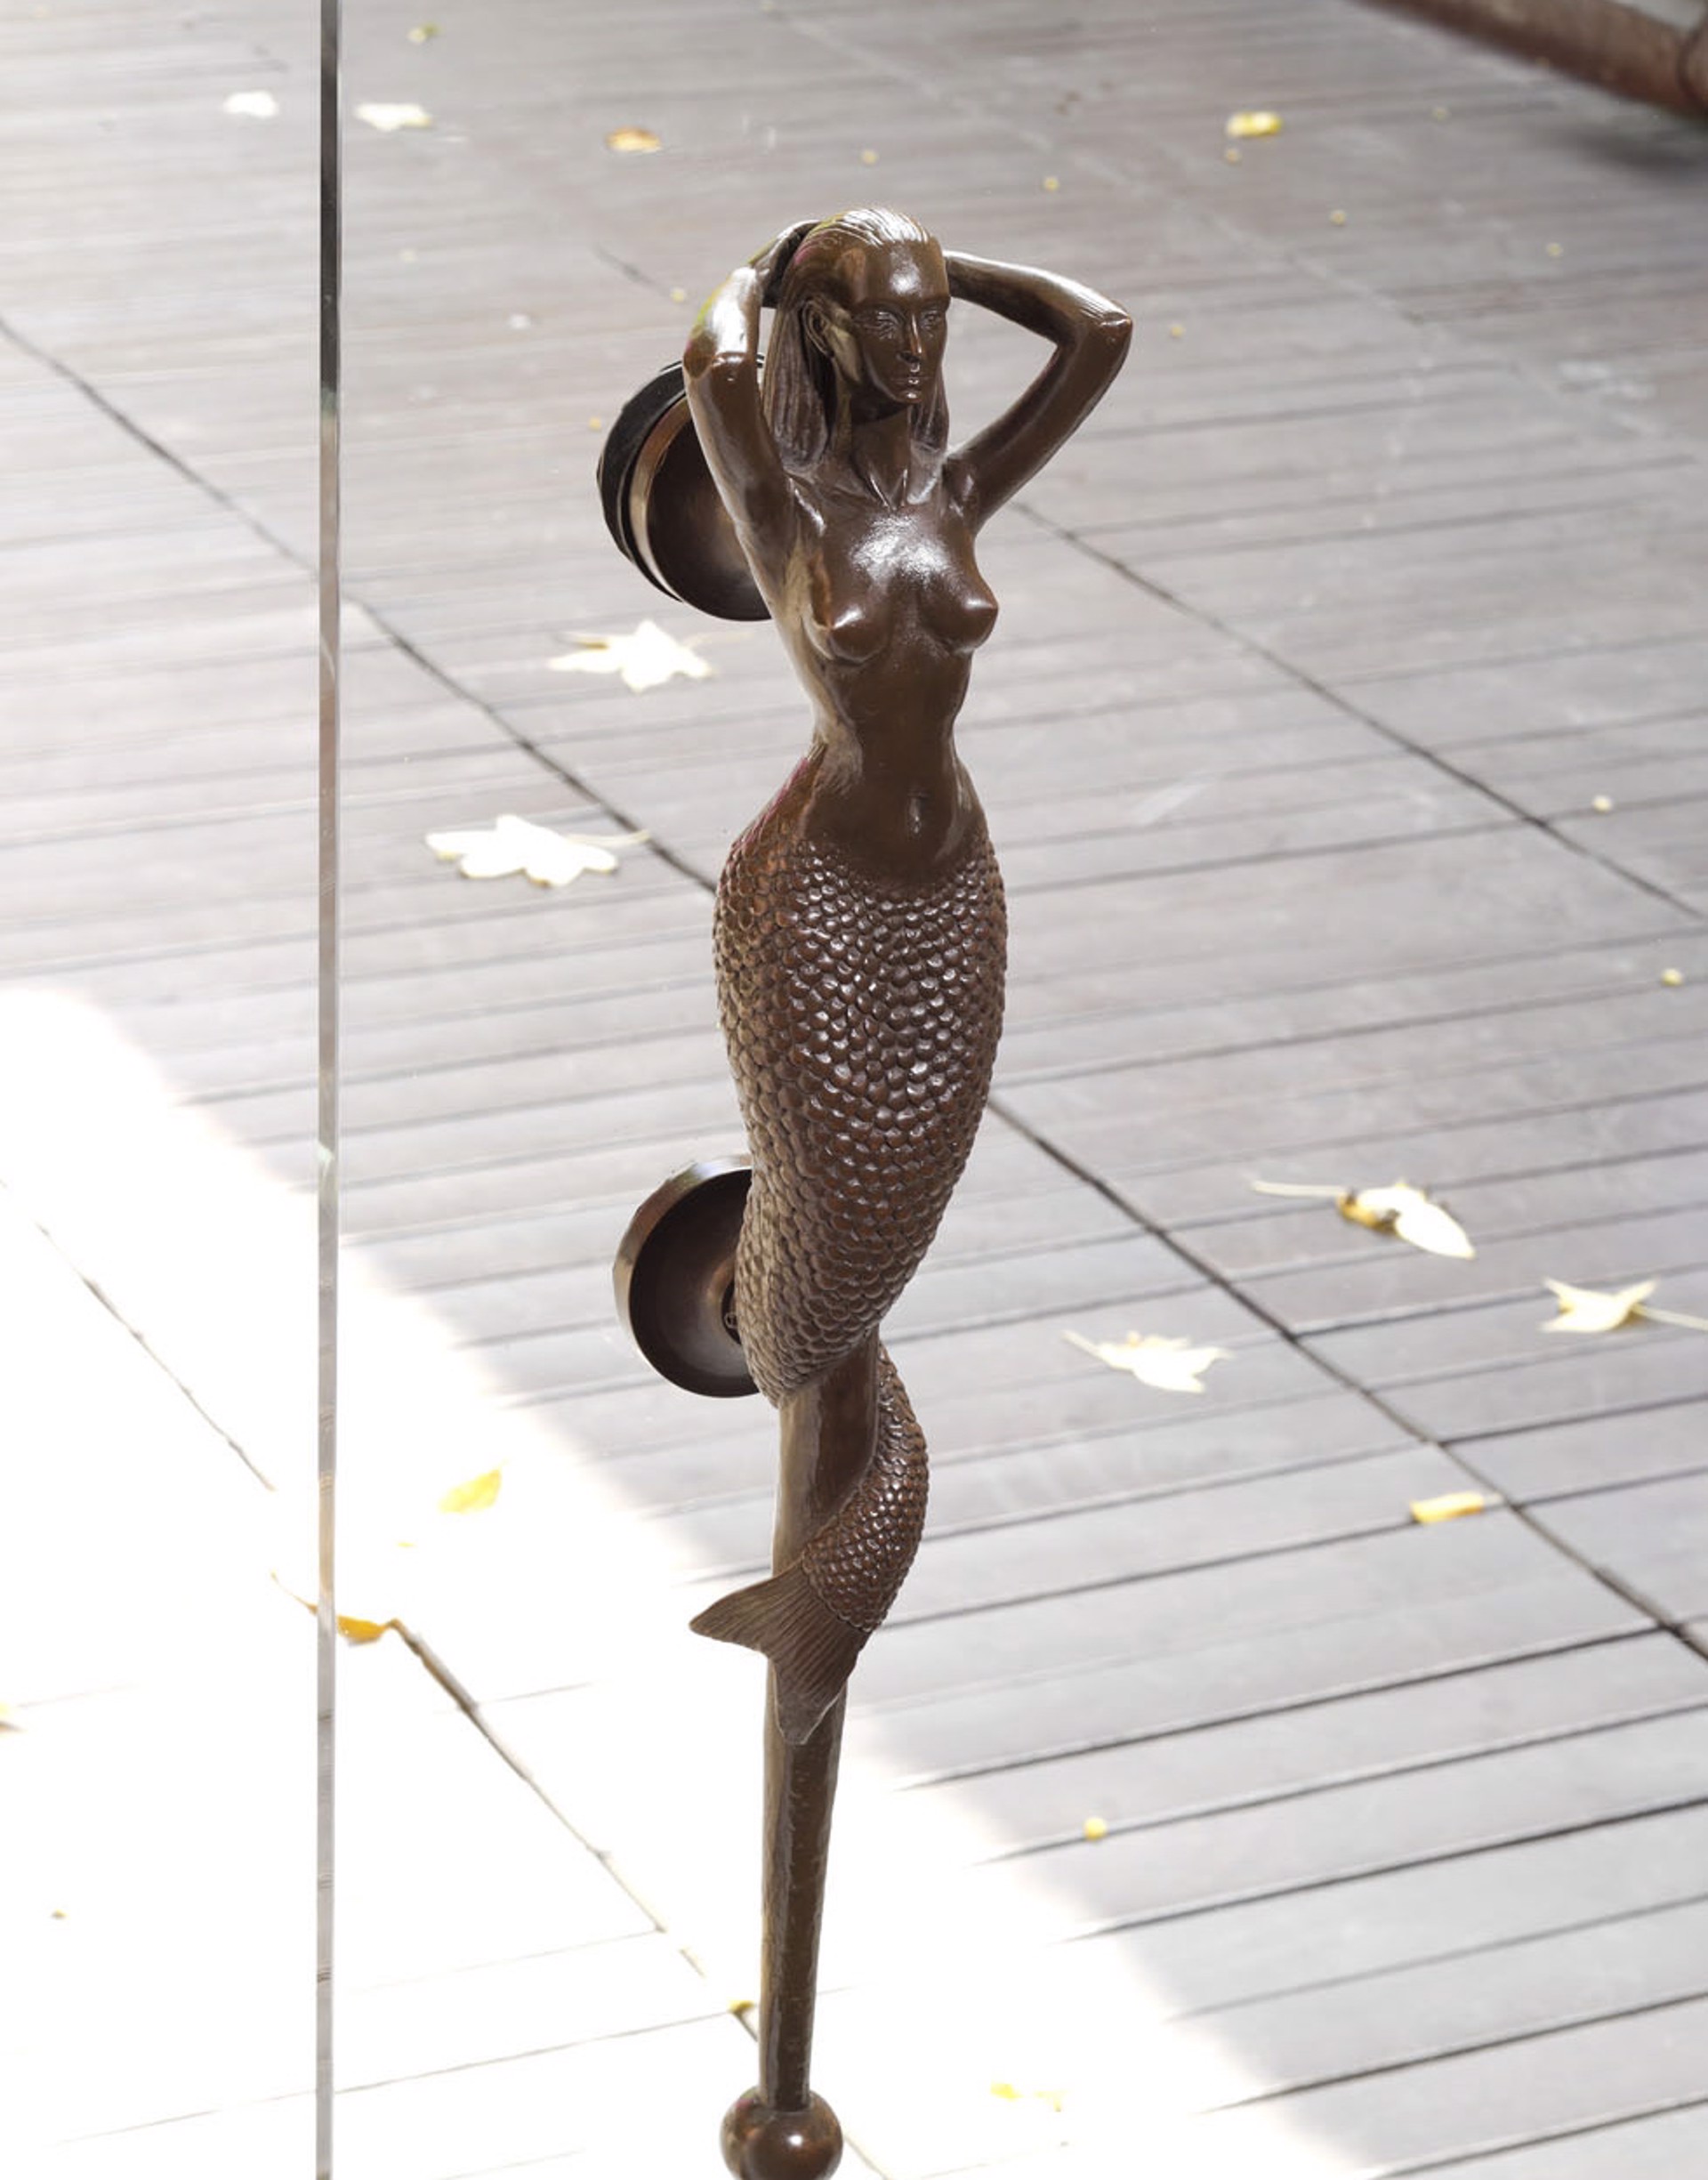 Mermaid Handle by Sergio Bustamante (sculptor)